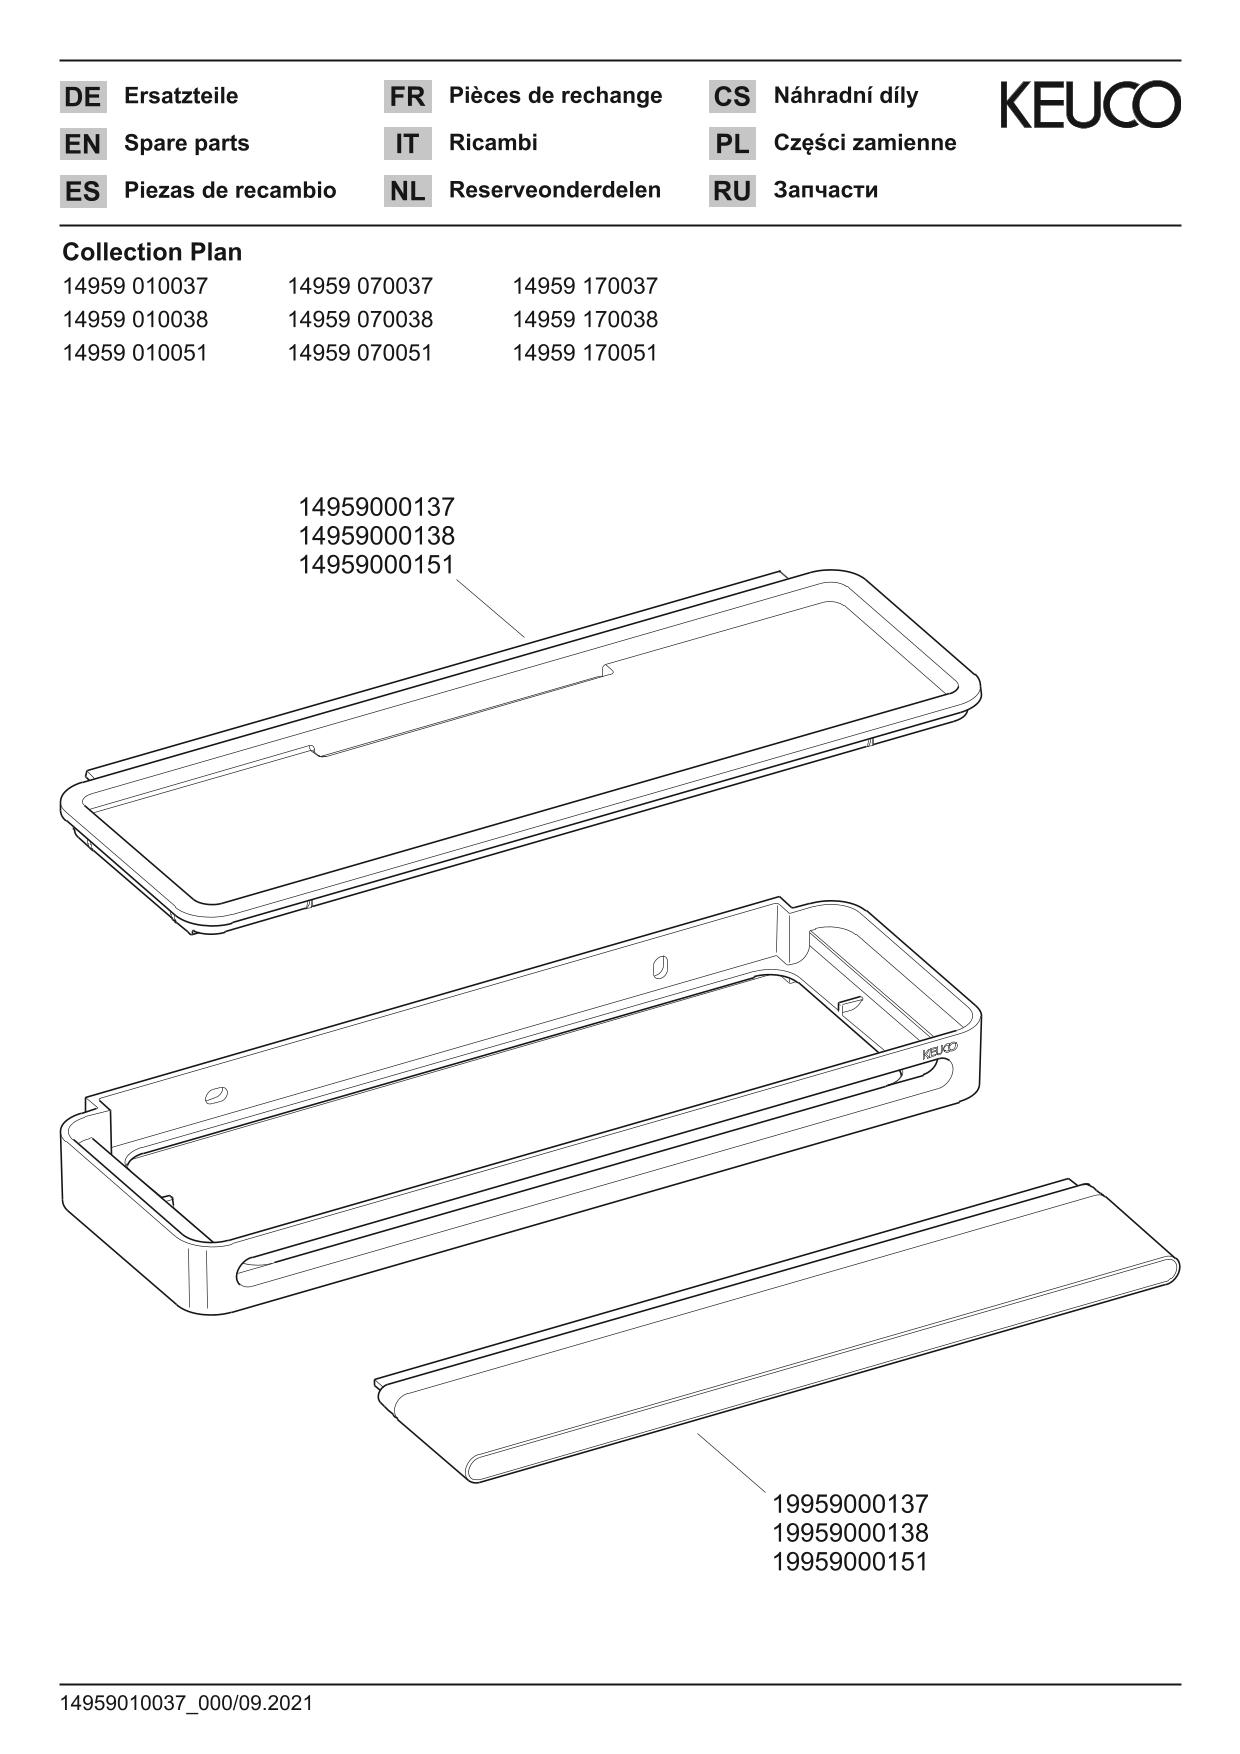 Plan 14959170051 Duschkorb mit Glasabzieher Aluminium-finish/weiß